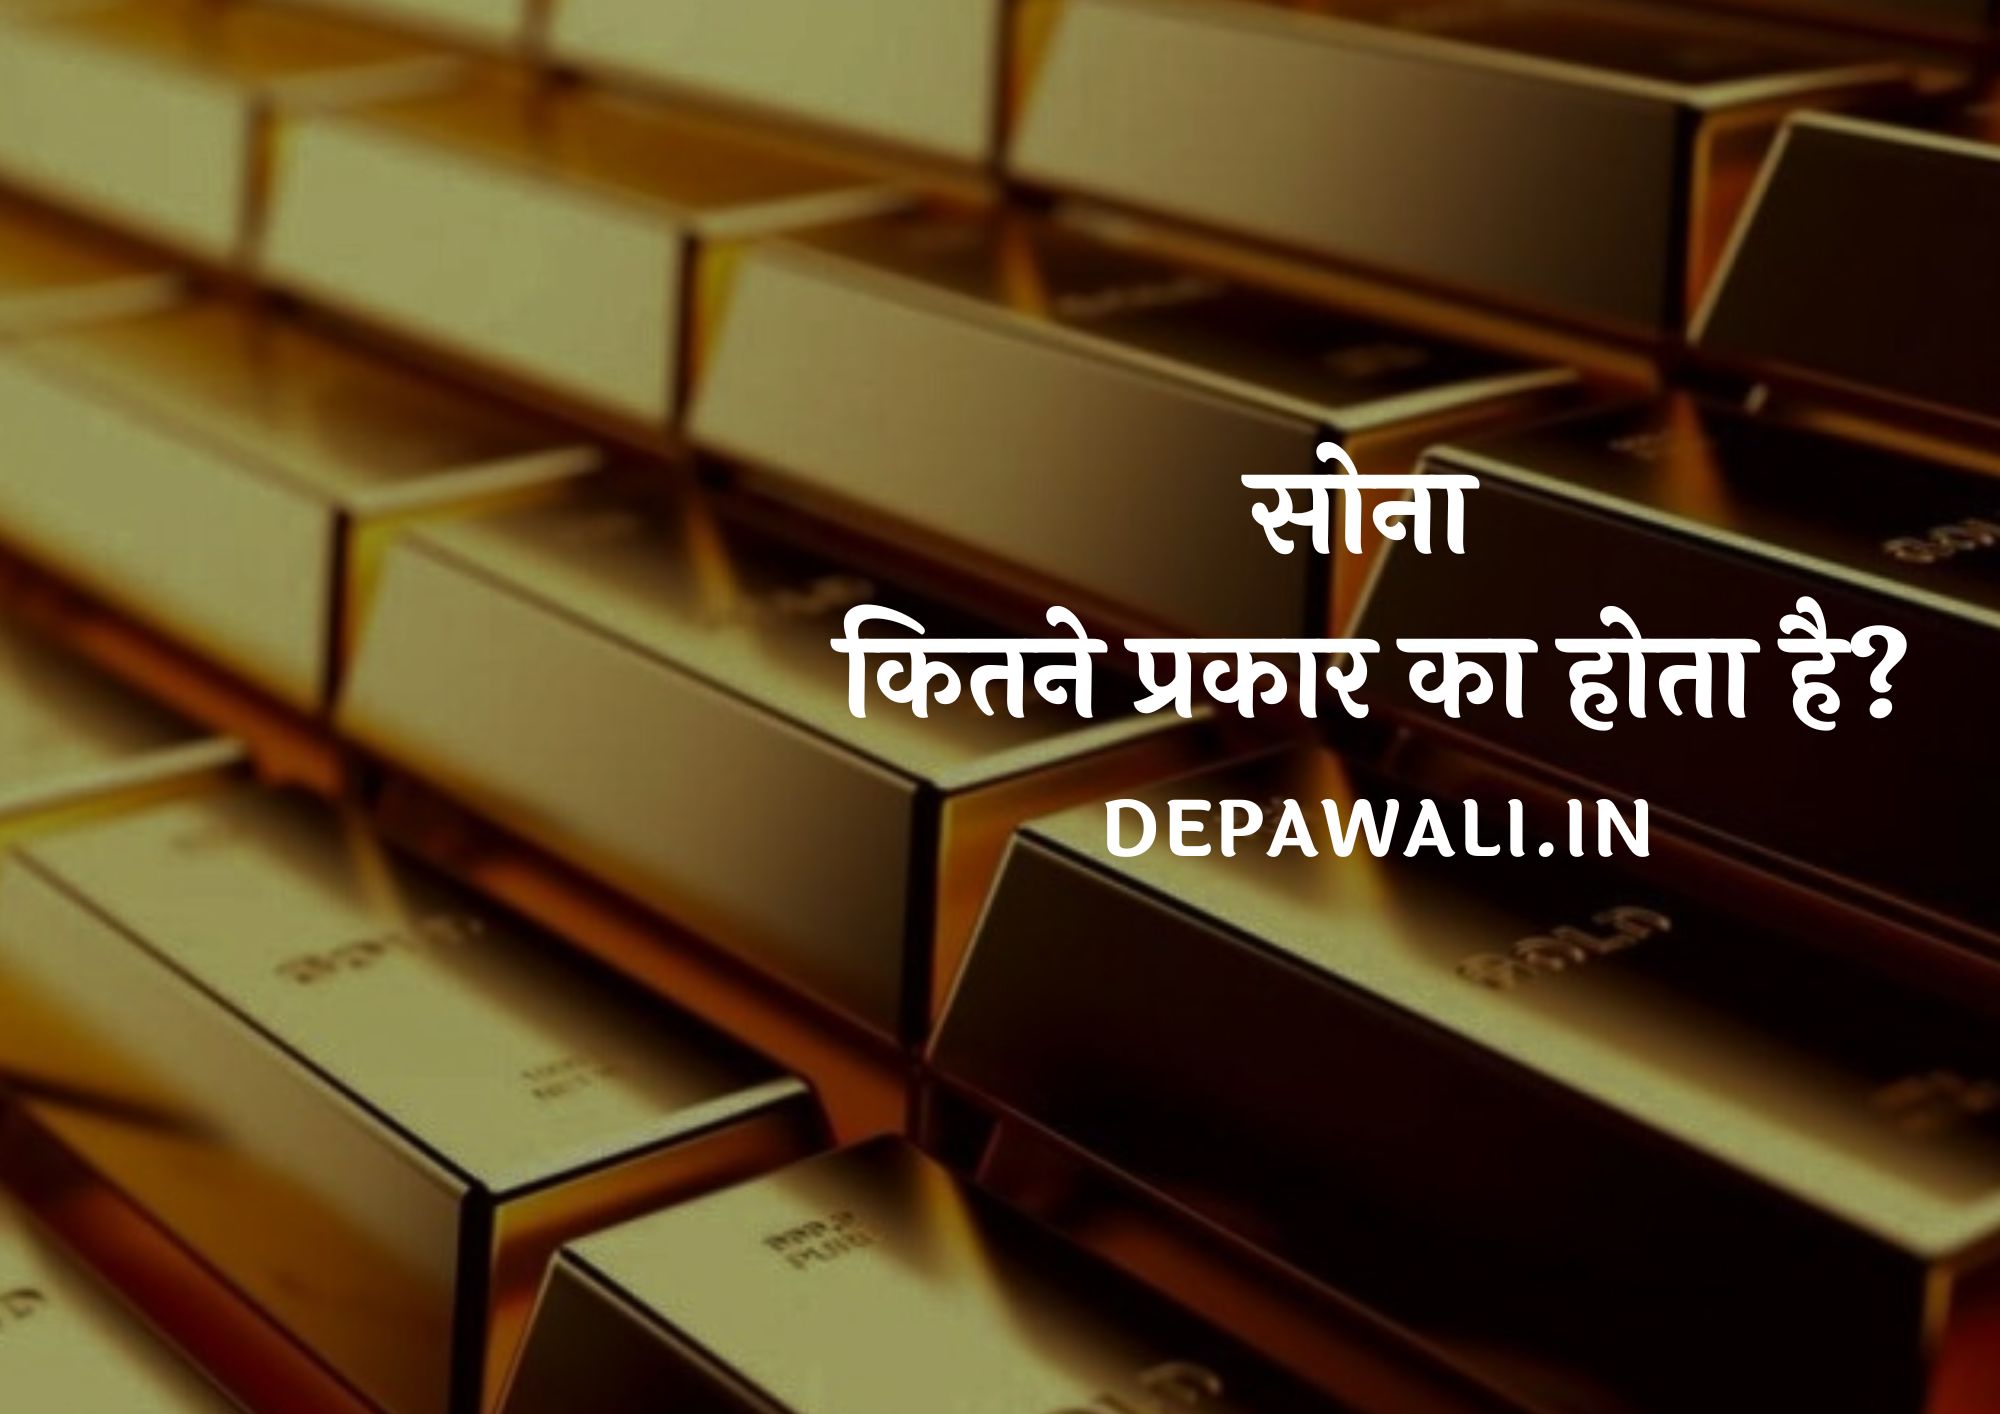 सोना कितने प्रकार का होता है, सोना के प्रकार - Types Of Gold In Hindi